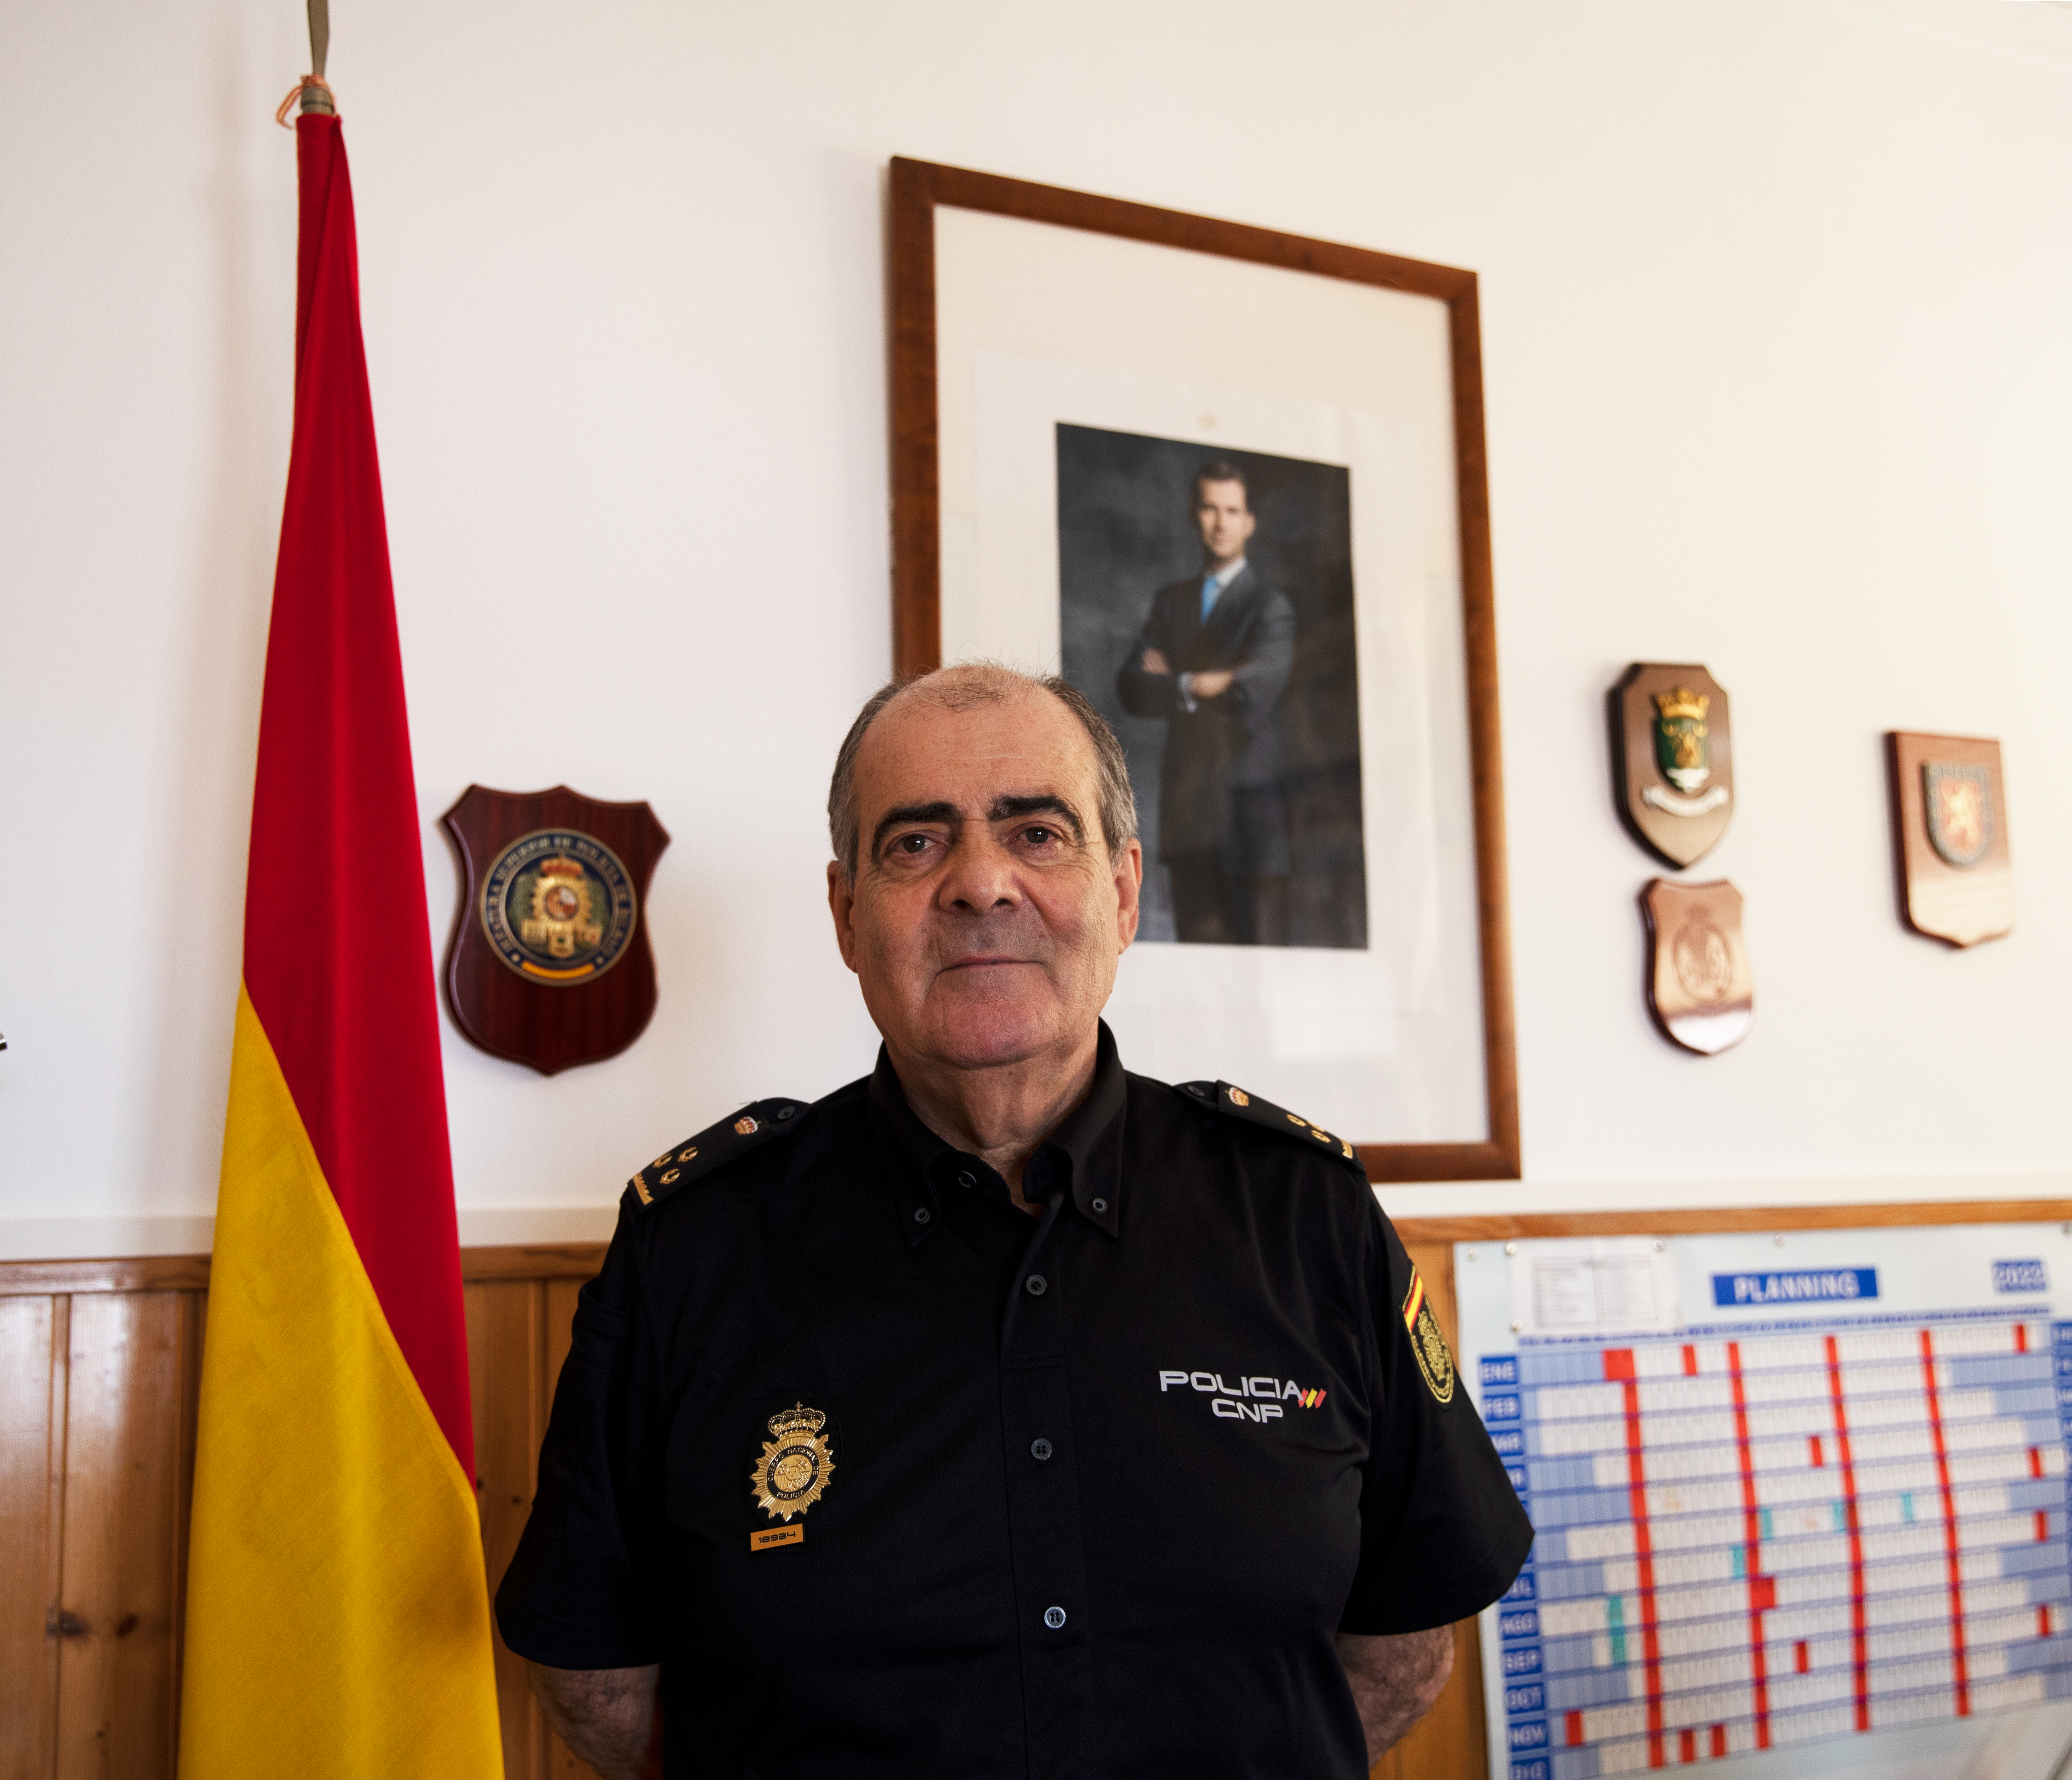 José Luis Fernández, Interlocutor Policial Sanitario de Ceuta, se jubila este 18 de junio